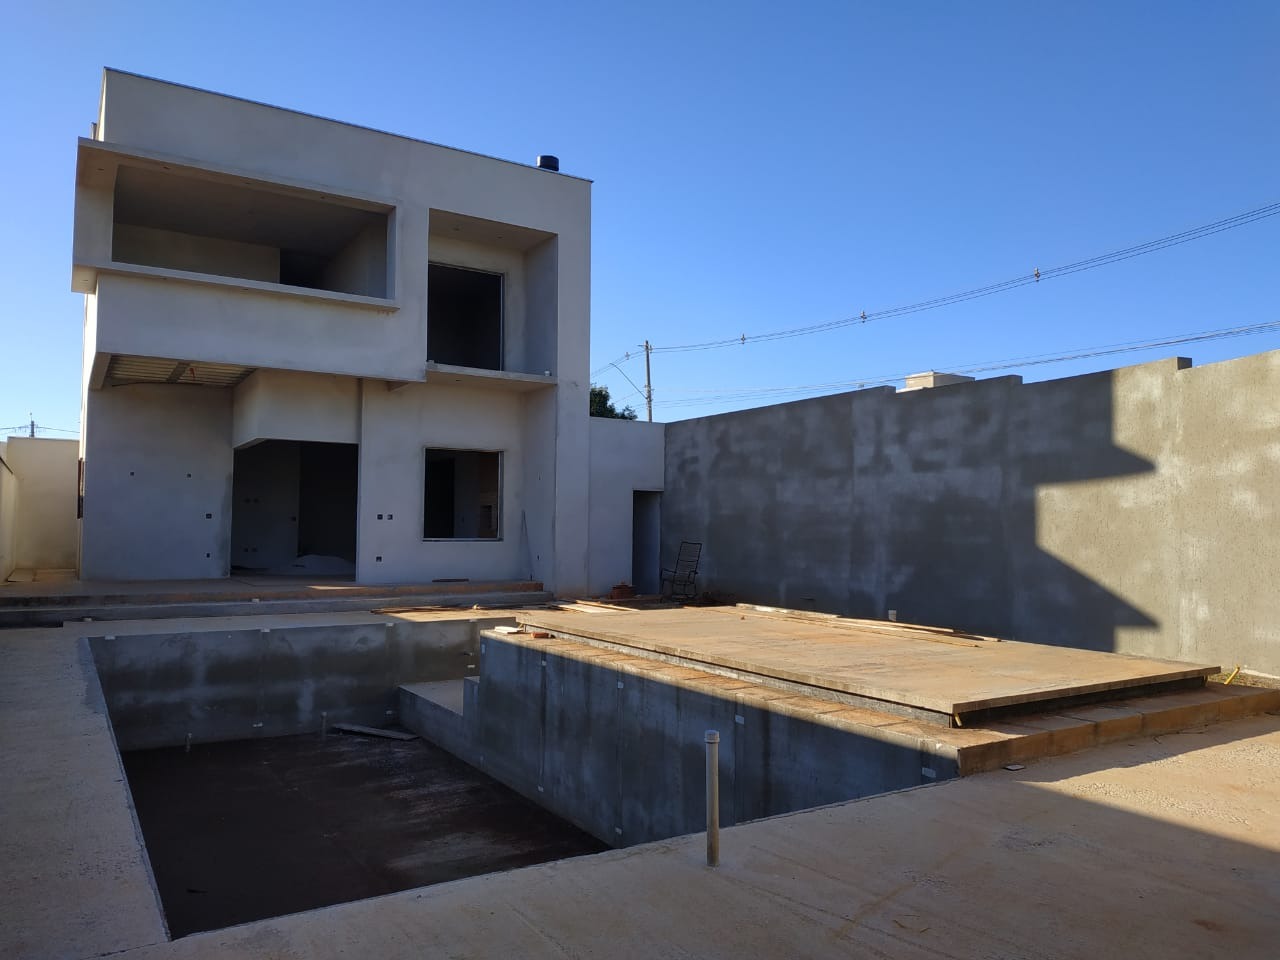 Casa para comprar, 2 quartos, no bairro Residencial Doutor Raul Coury em Rio das Pedras - SP